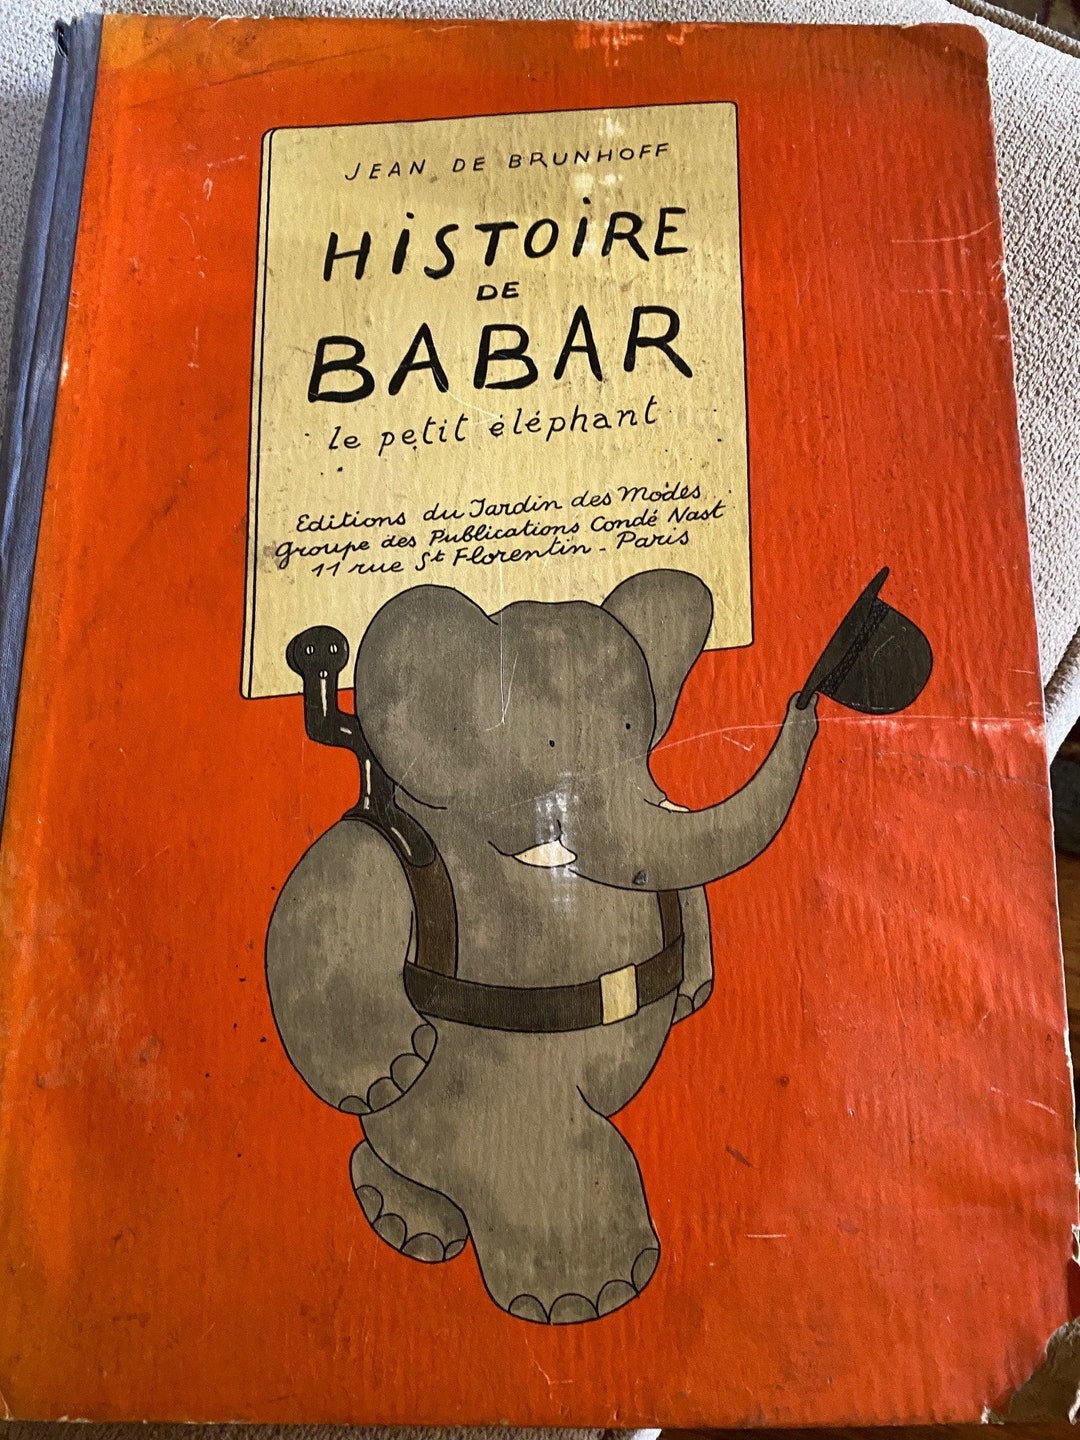 1931 Histoire De BABAR Le Petit Elephant by Jean De Brunhoff pic